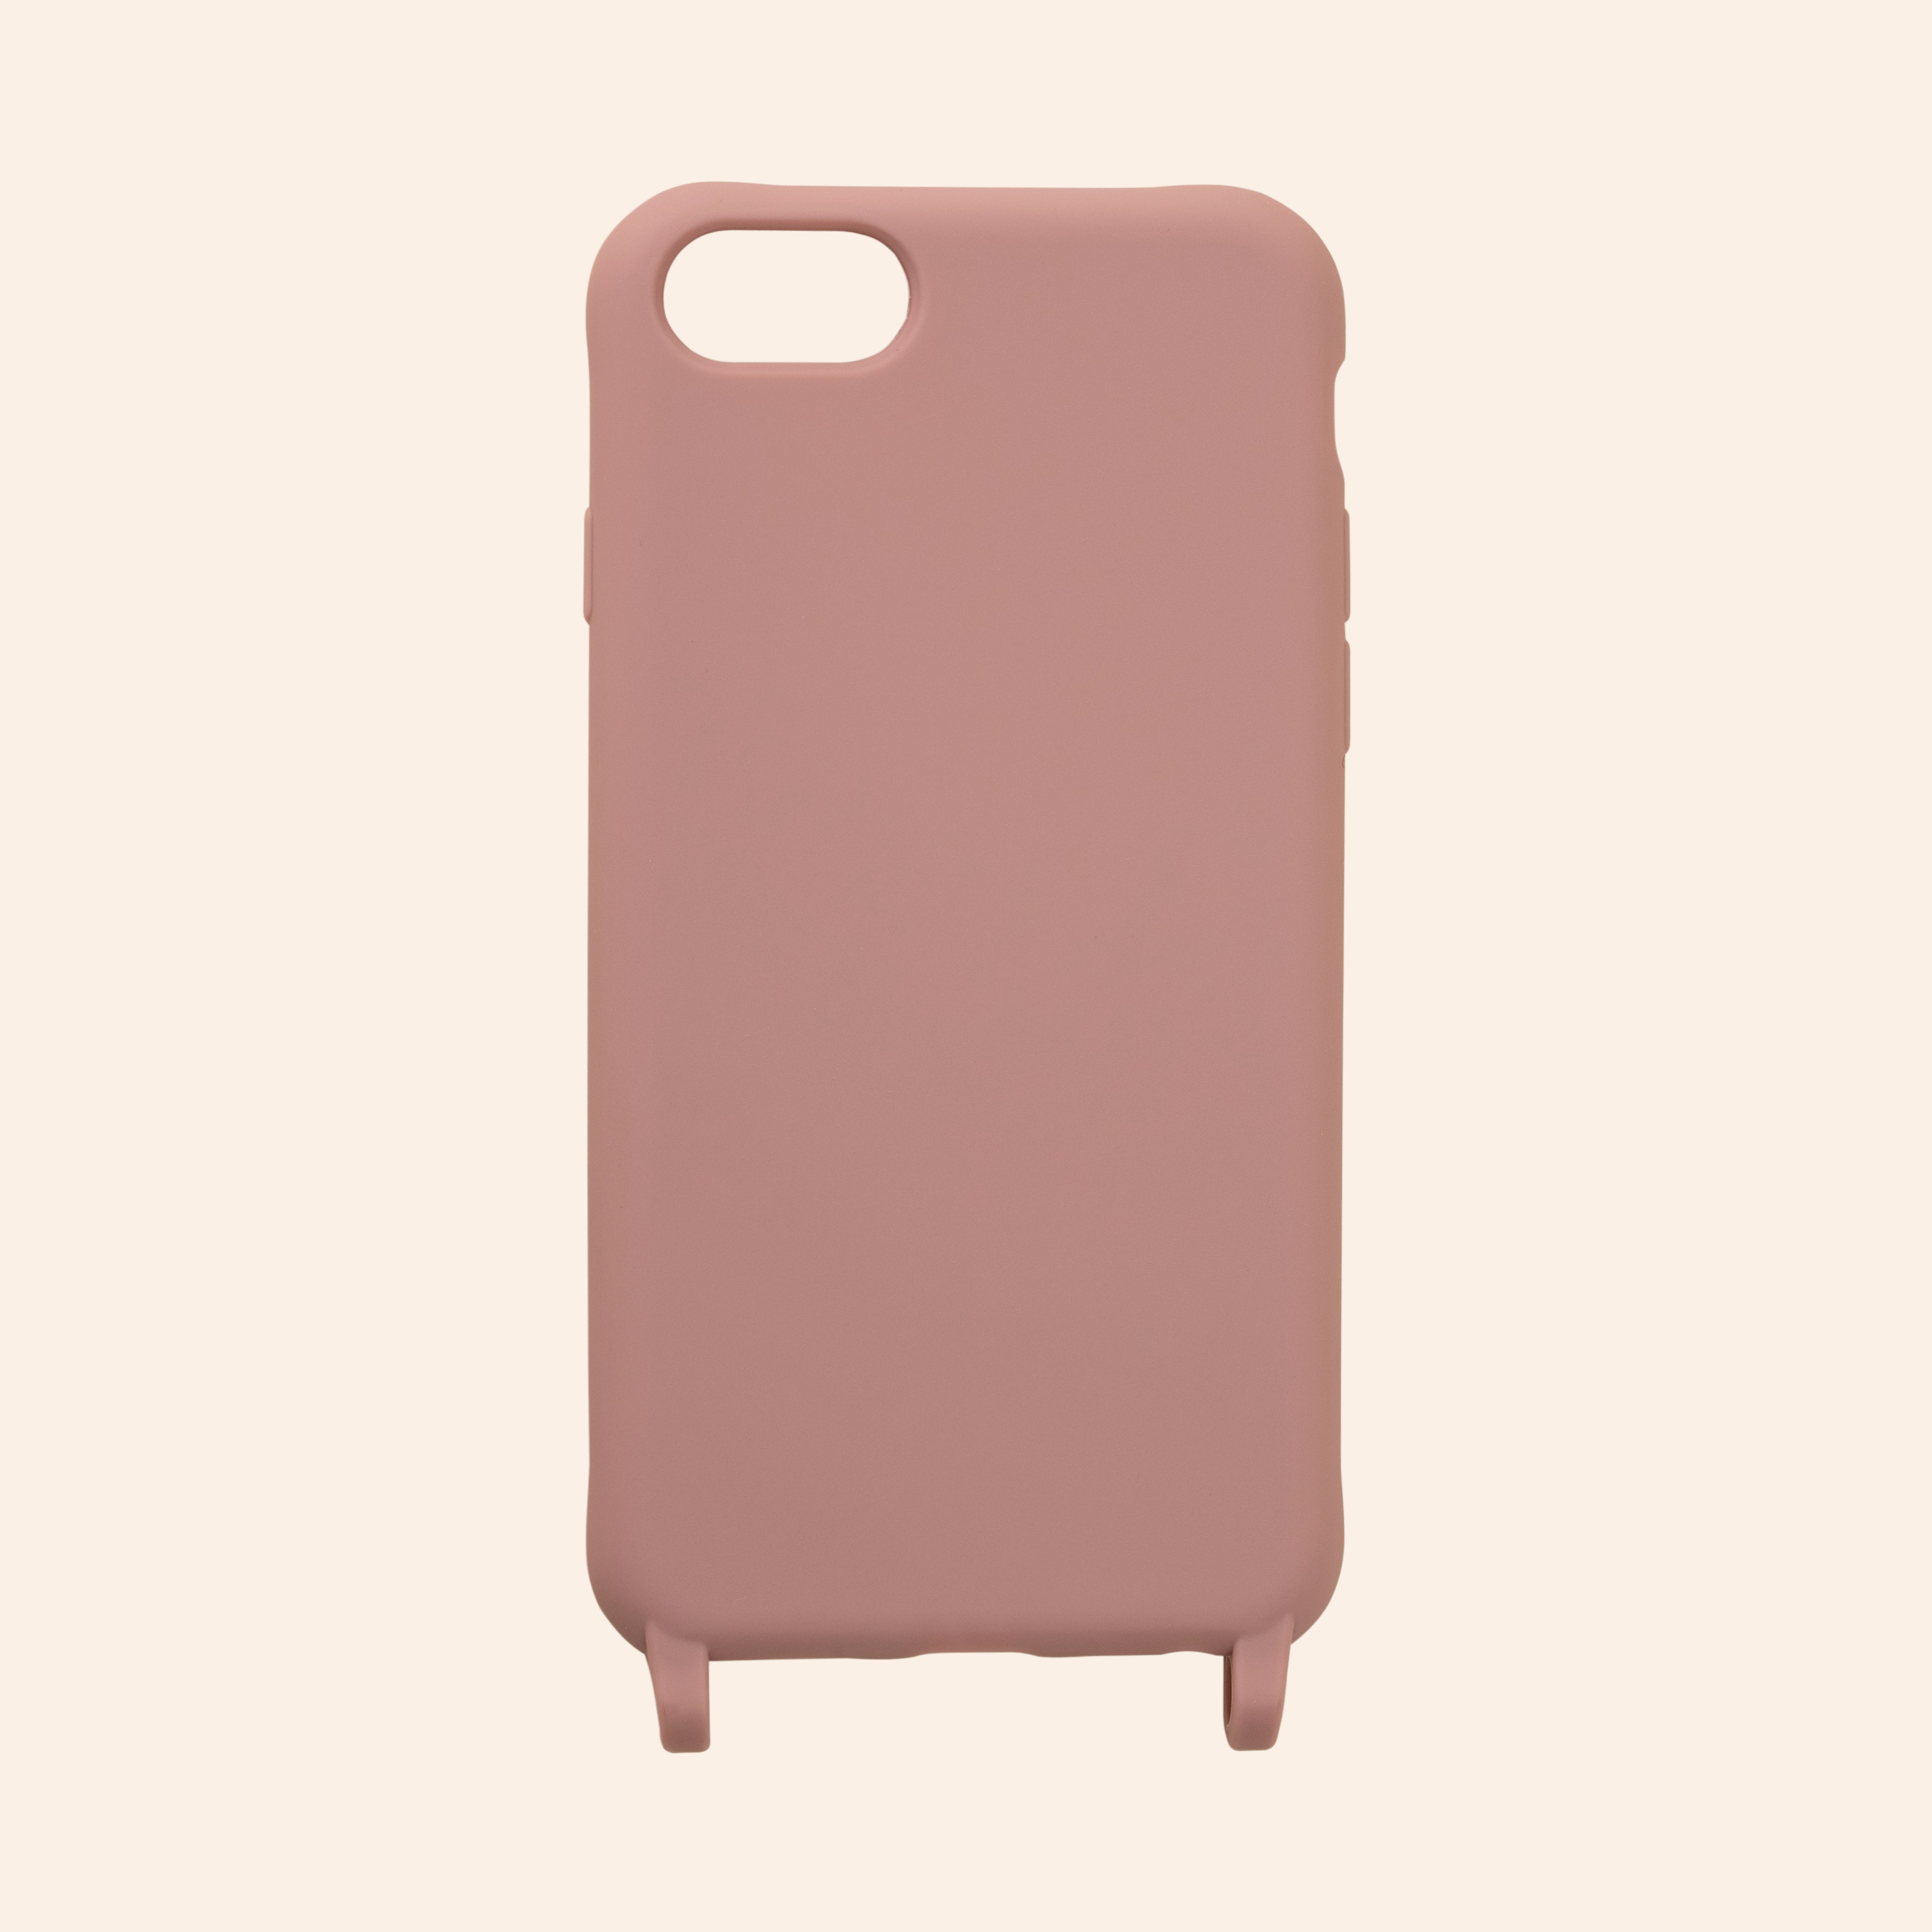 iPhone phone case rose